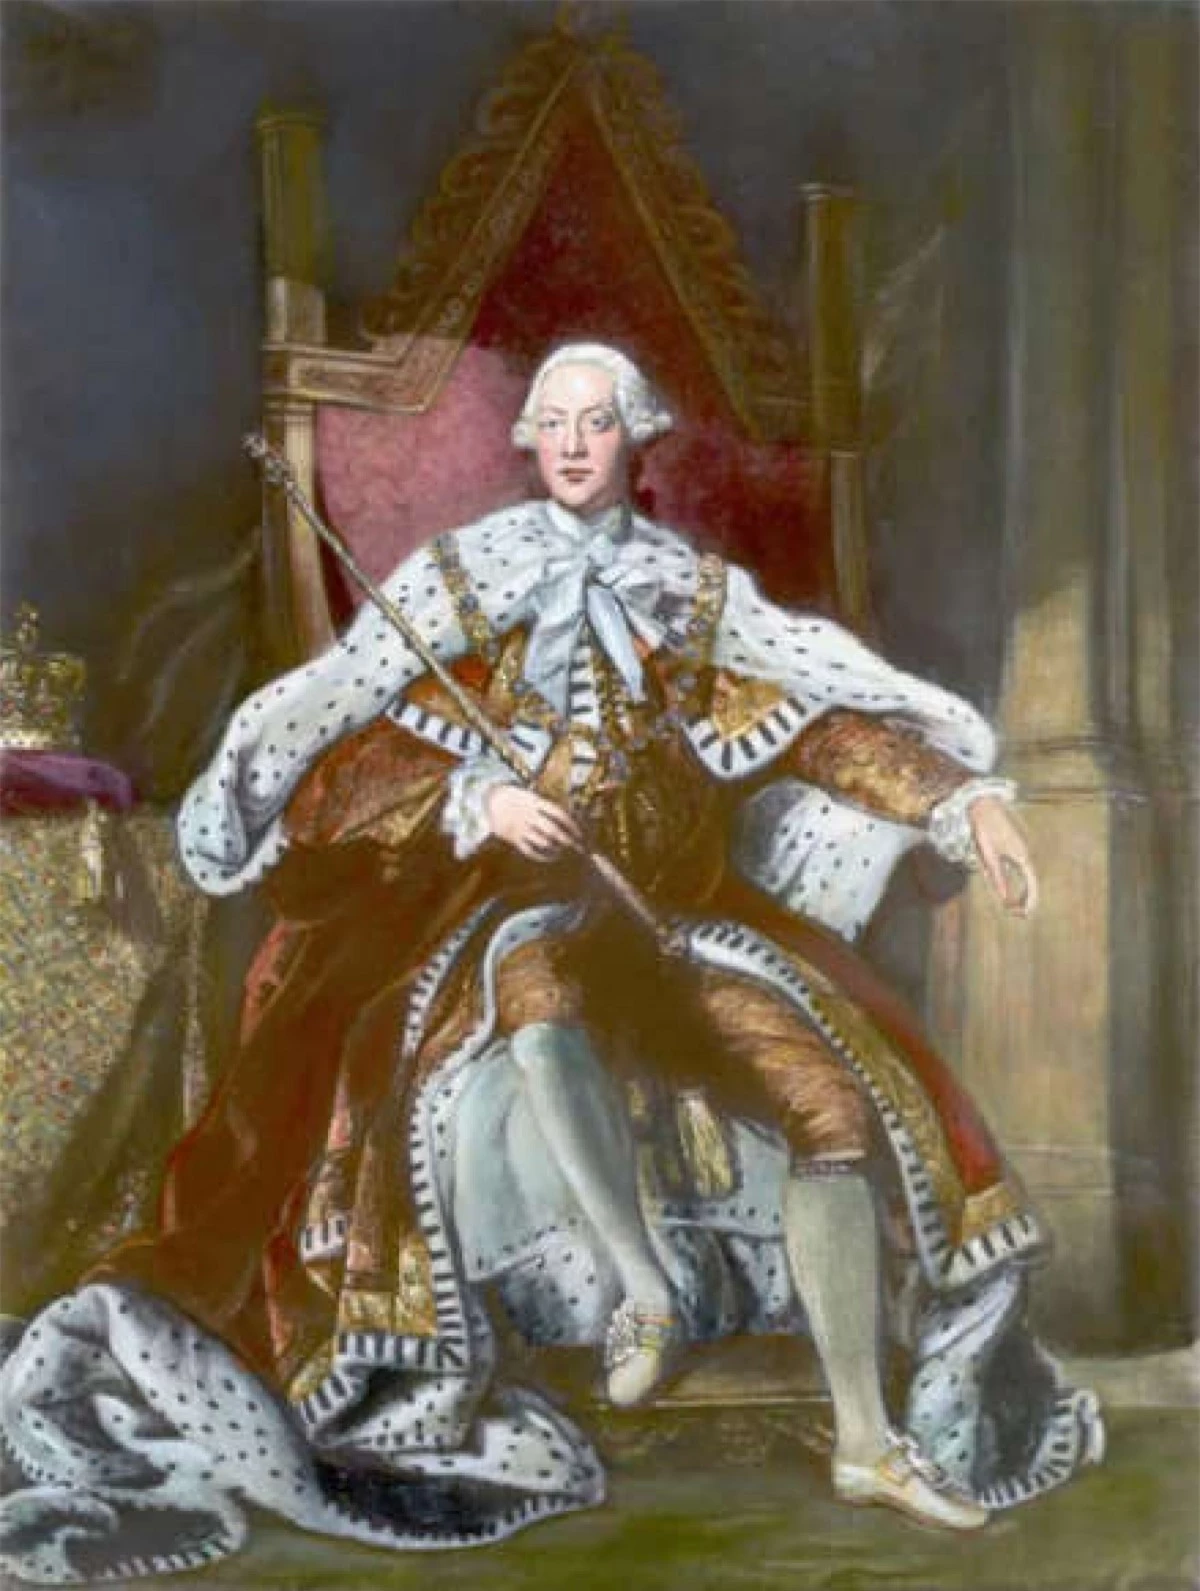 Vua George III của Anh. Lên ngôi vào năm 1760, Vua George III cũng nằm trong danh sách các quân vương của Anh trị vì lâu nhất. Ông đã từng nghiên cứu khoa học, nông nghiệp và thành lập Học viện Nghệ thuật Hoàng gia Anh. Vua George III đã trị vì trong 59 năm.